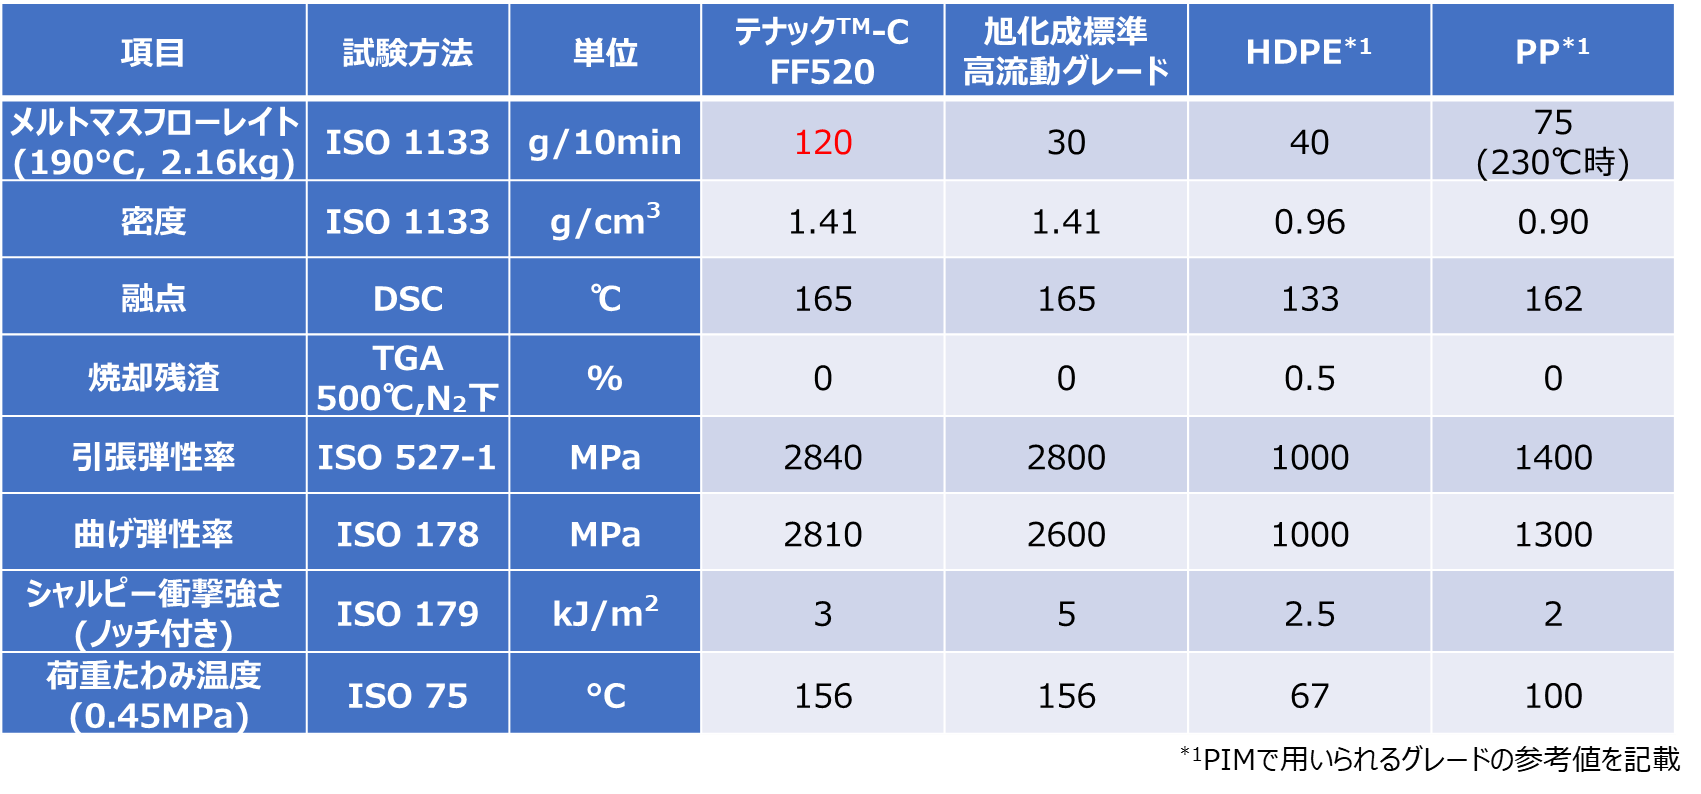 テナック™-C FF520と、PIMで用いられる各樹脂の一般物性（参考値）の比較